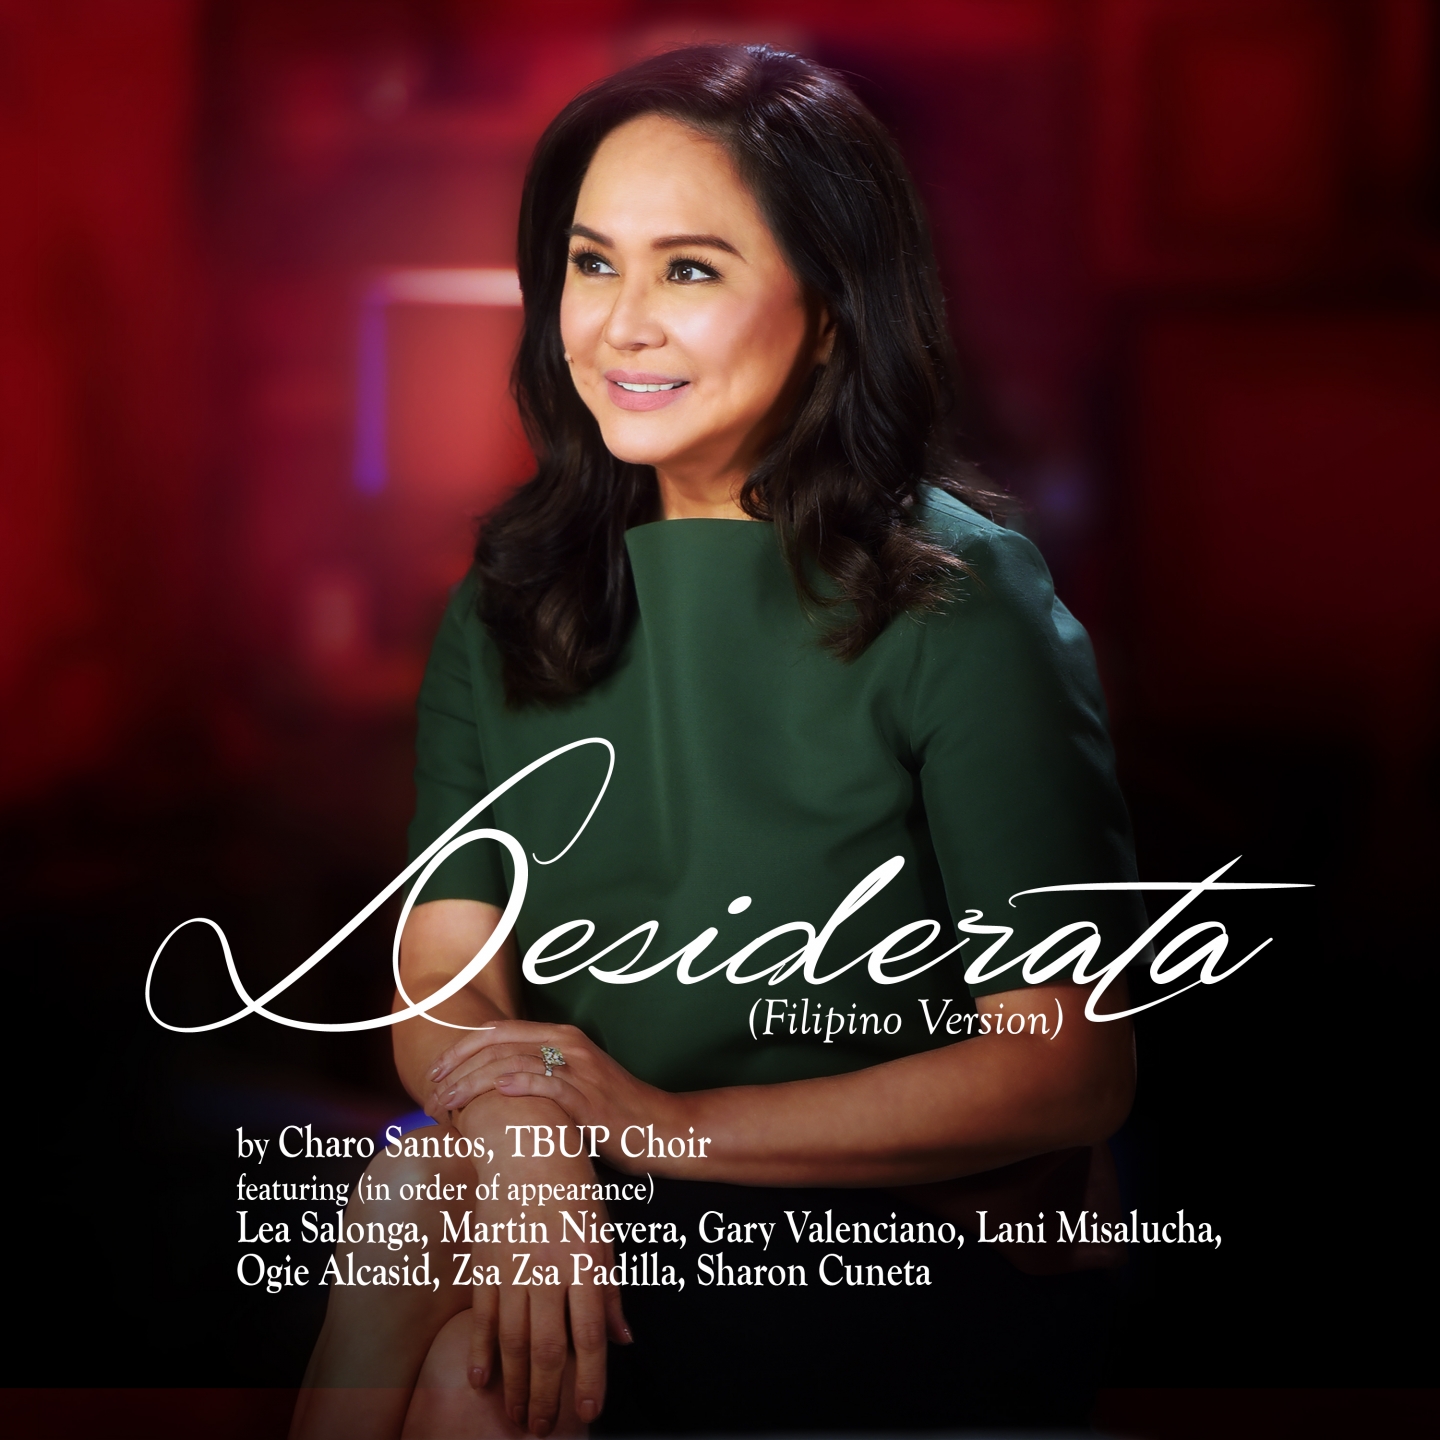 Desiderata (Filipino Version)